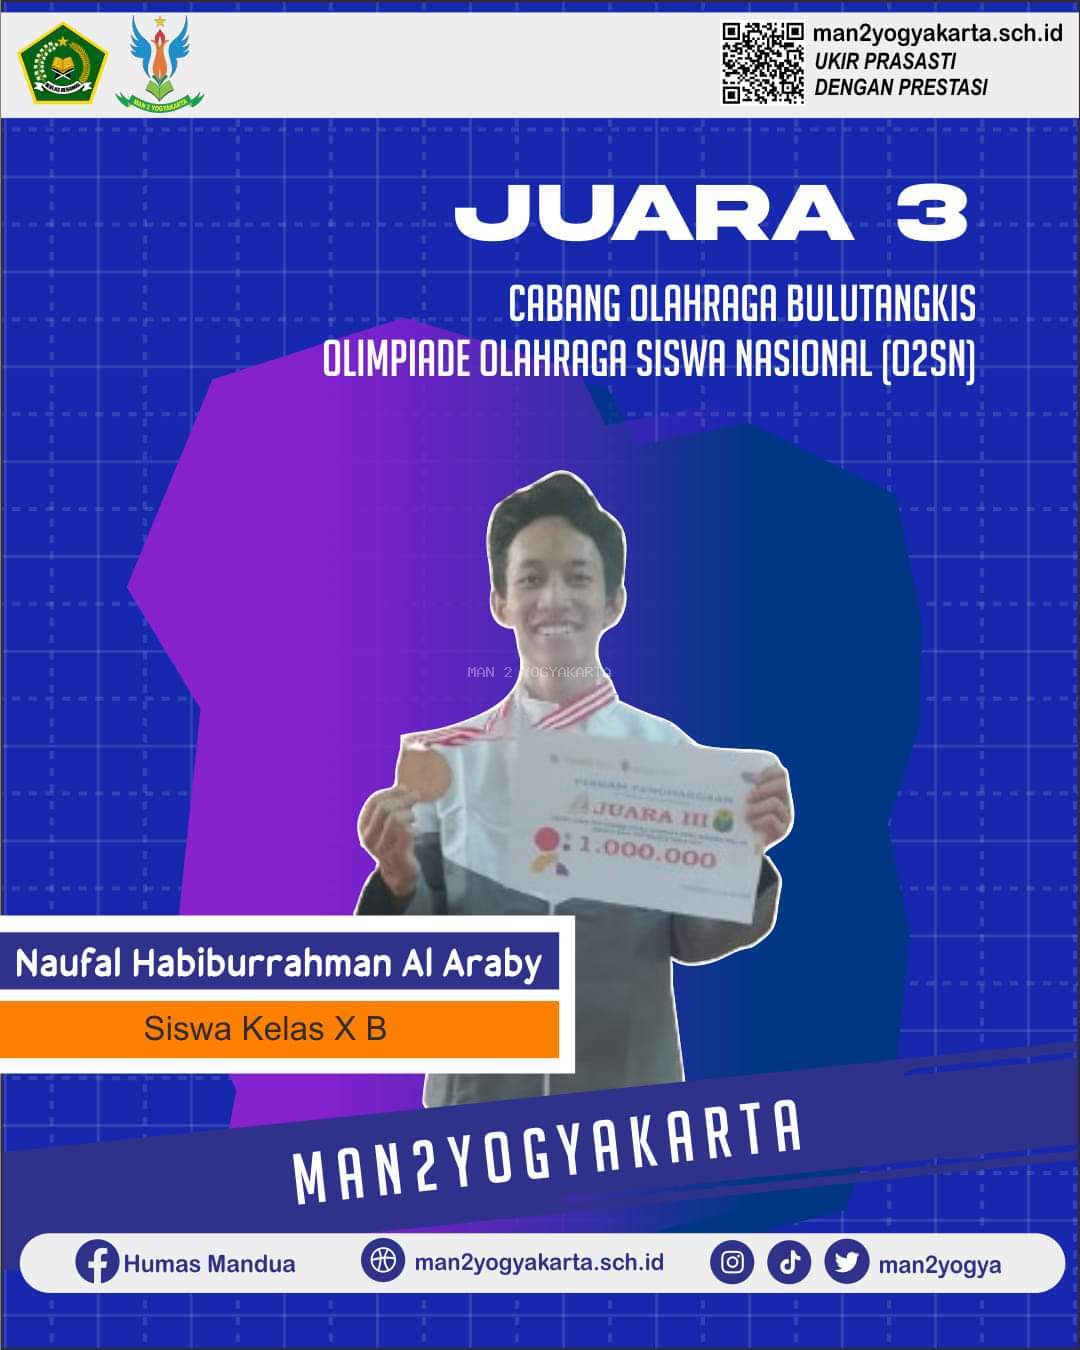 Naufa Habiburrahman Al Araby Juara 3 O2SN Kota Yogyakarta